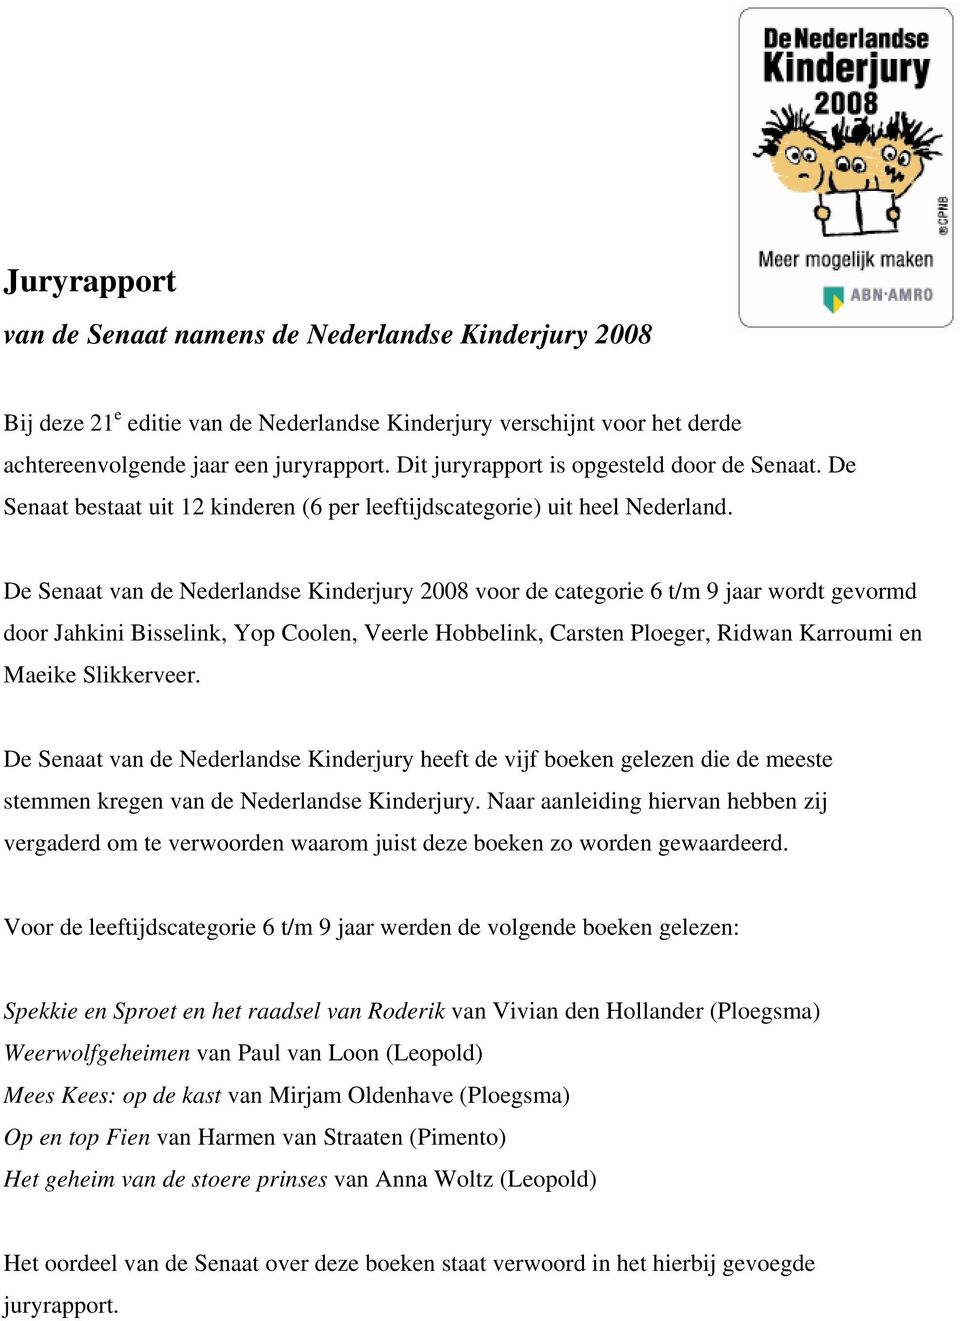 De Senaat van de Nederlandse Kinderjury 2008 voor de categorie 6 t/m 9 jaar wordt gevormd door Jahkini Bisselink, Yop Coolen, Veerle Hobbelink, Carsten Ploeger, Ridwan Karroumi en Maeike Slikkerveer.